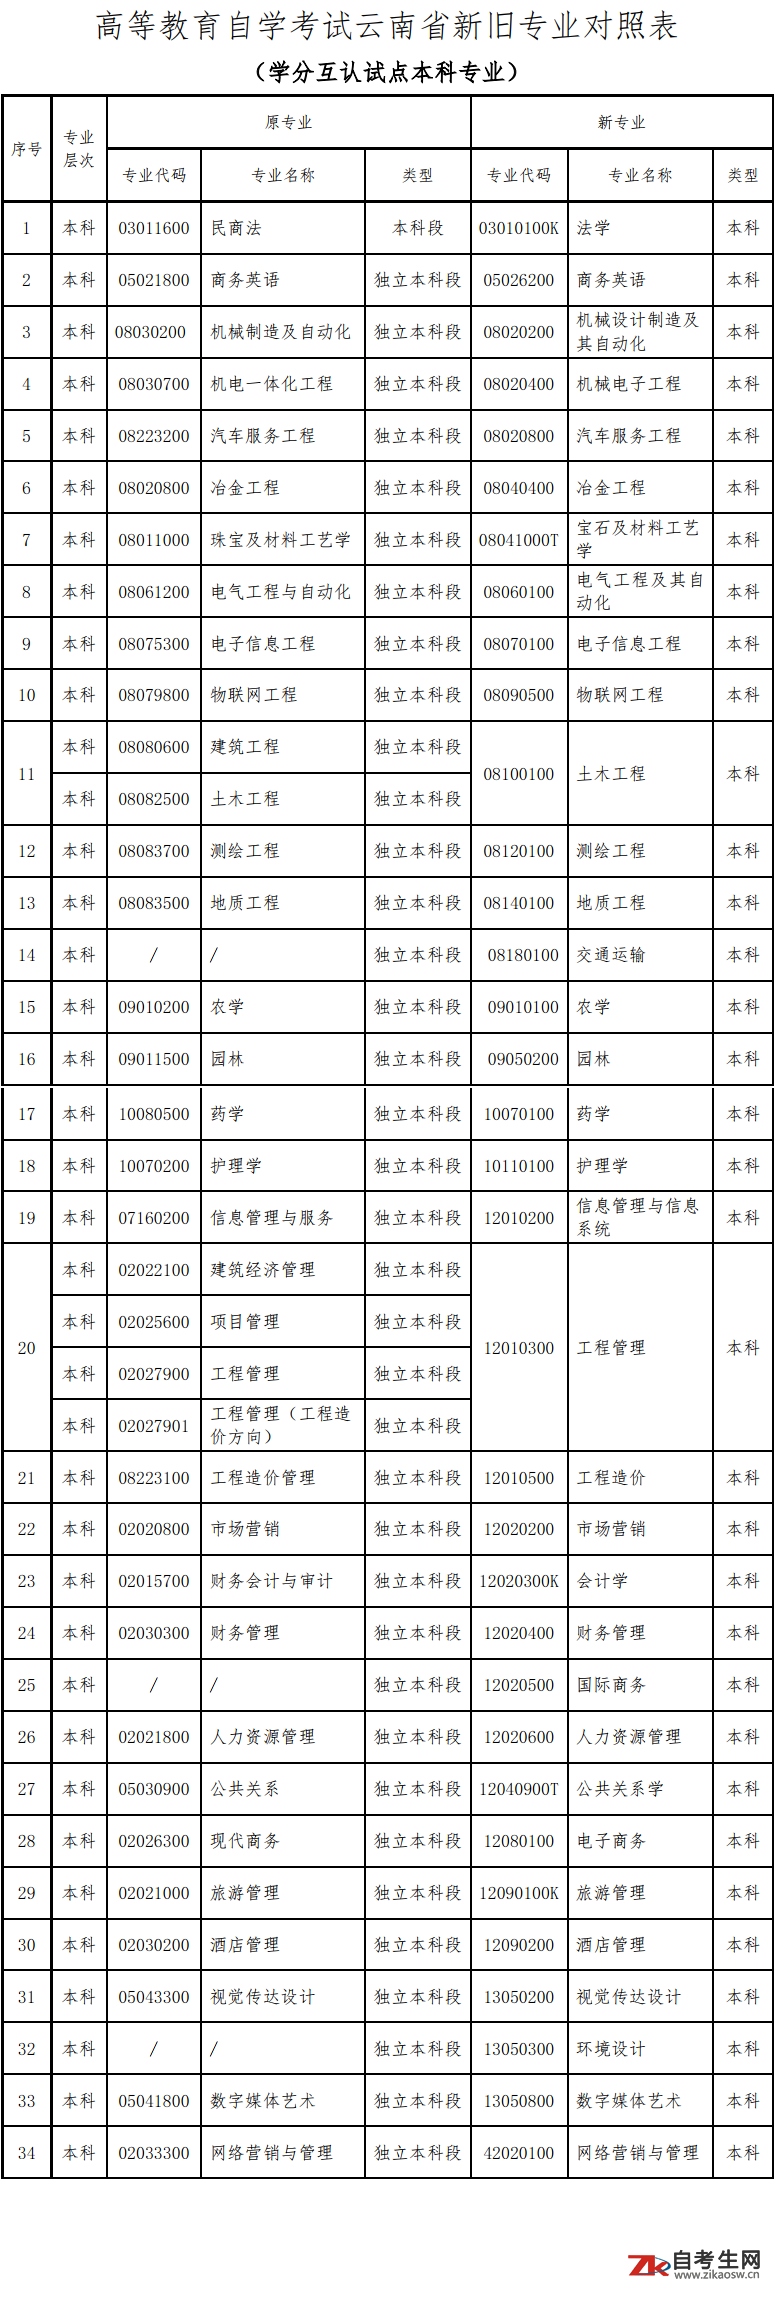 云南省关于更新高等教育自学考试开考专业代码及名称的公告3.png